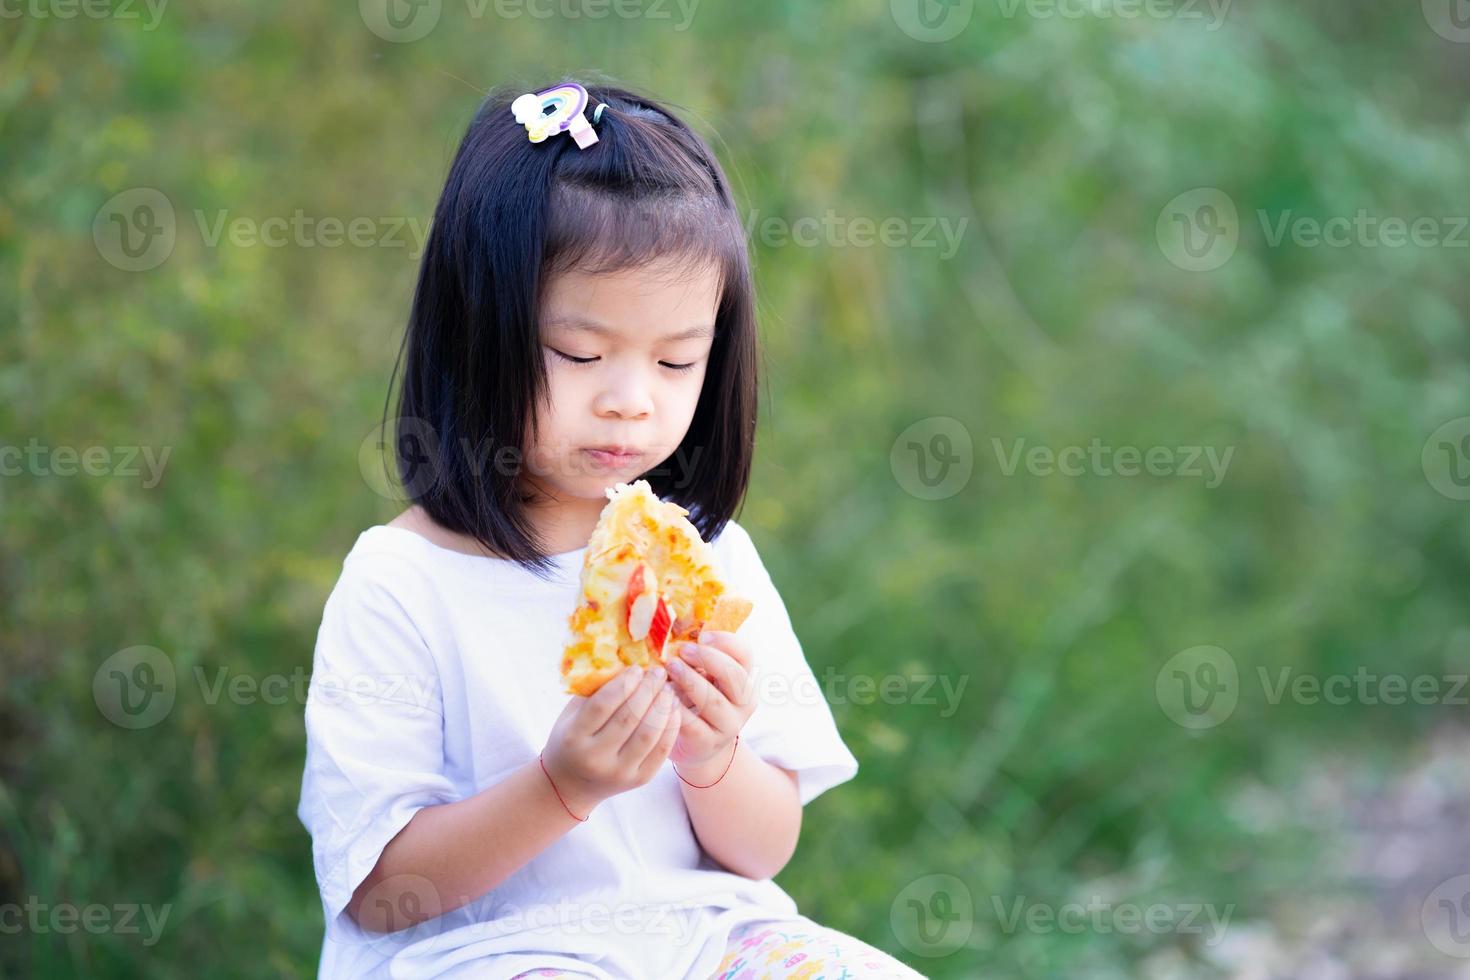 linda chica niño comiendo pizza. detrás del niño había un arbusto verde. foto